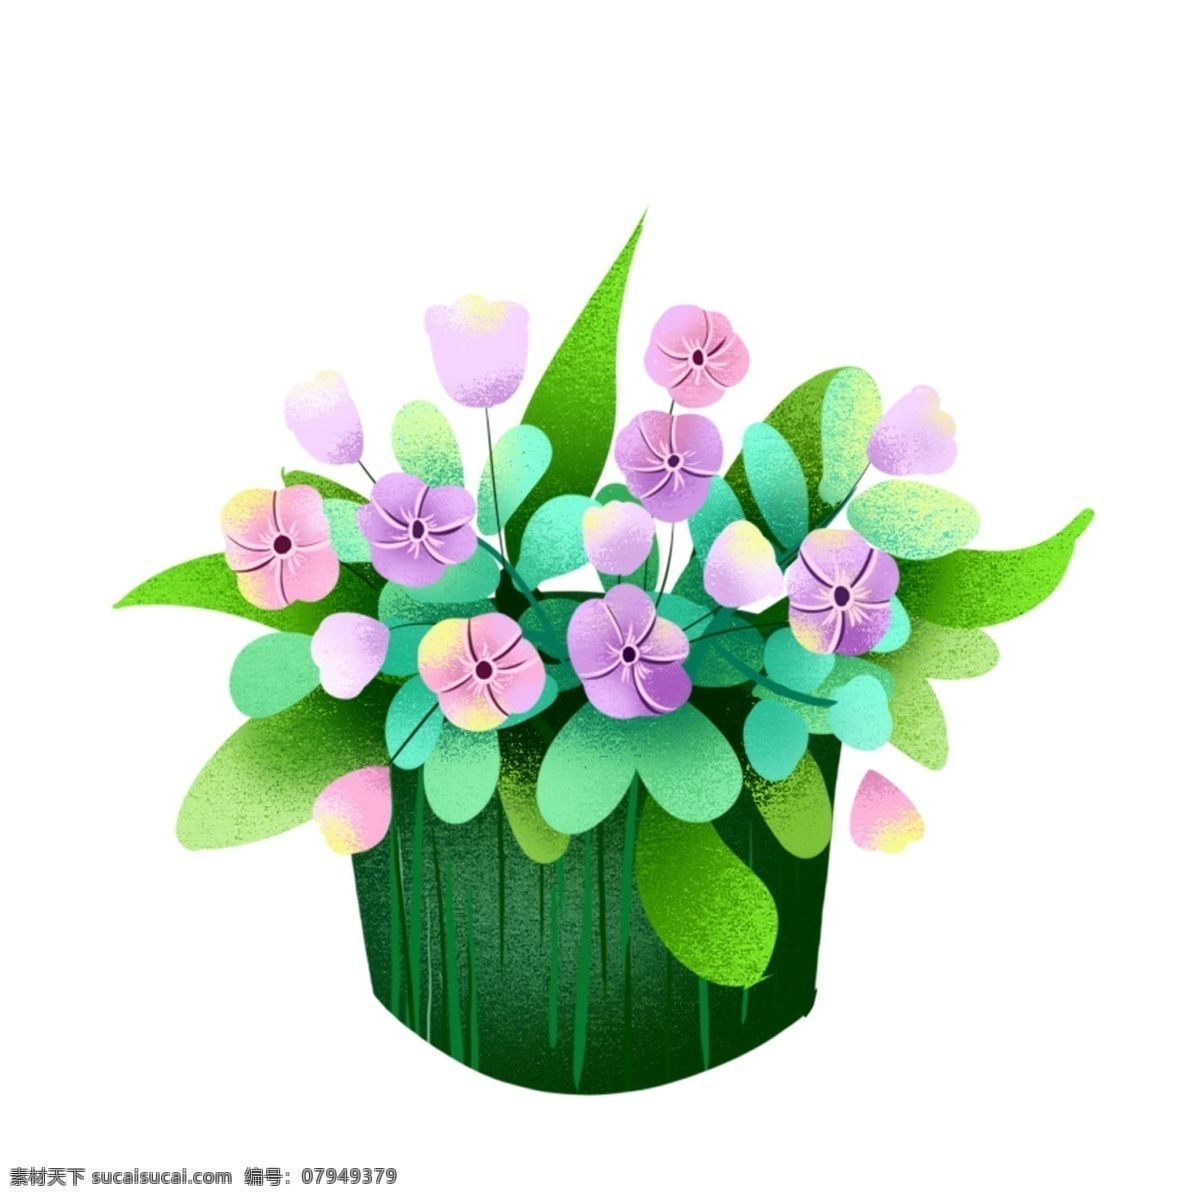 绿色 盆栽 花朵 图案 元素 花束 绿植 设计元素 简约 创意元素 手绘元素